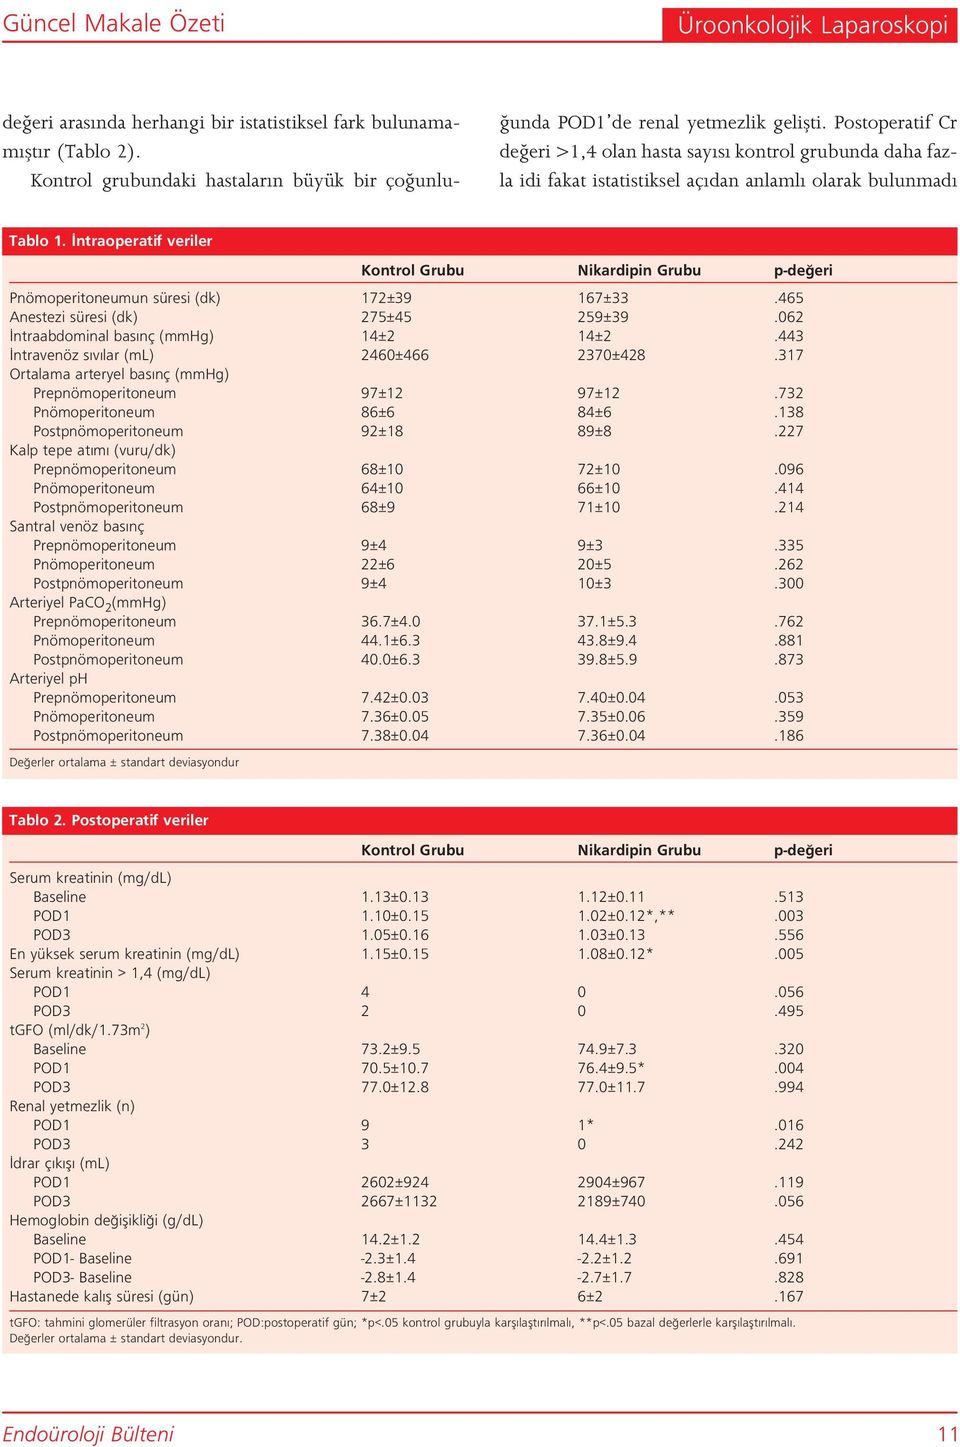 Postoperatif Cr de eri >1,4 olan hasta say s kontrol grubunda daha fazla idi fakat istatistiksel aç dan anlaml olarak bulunmad Tablo 1.